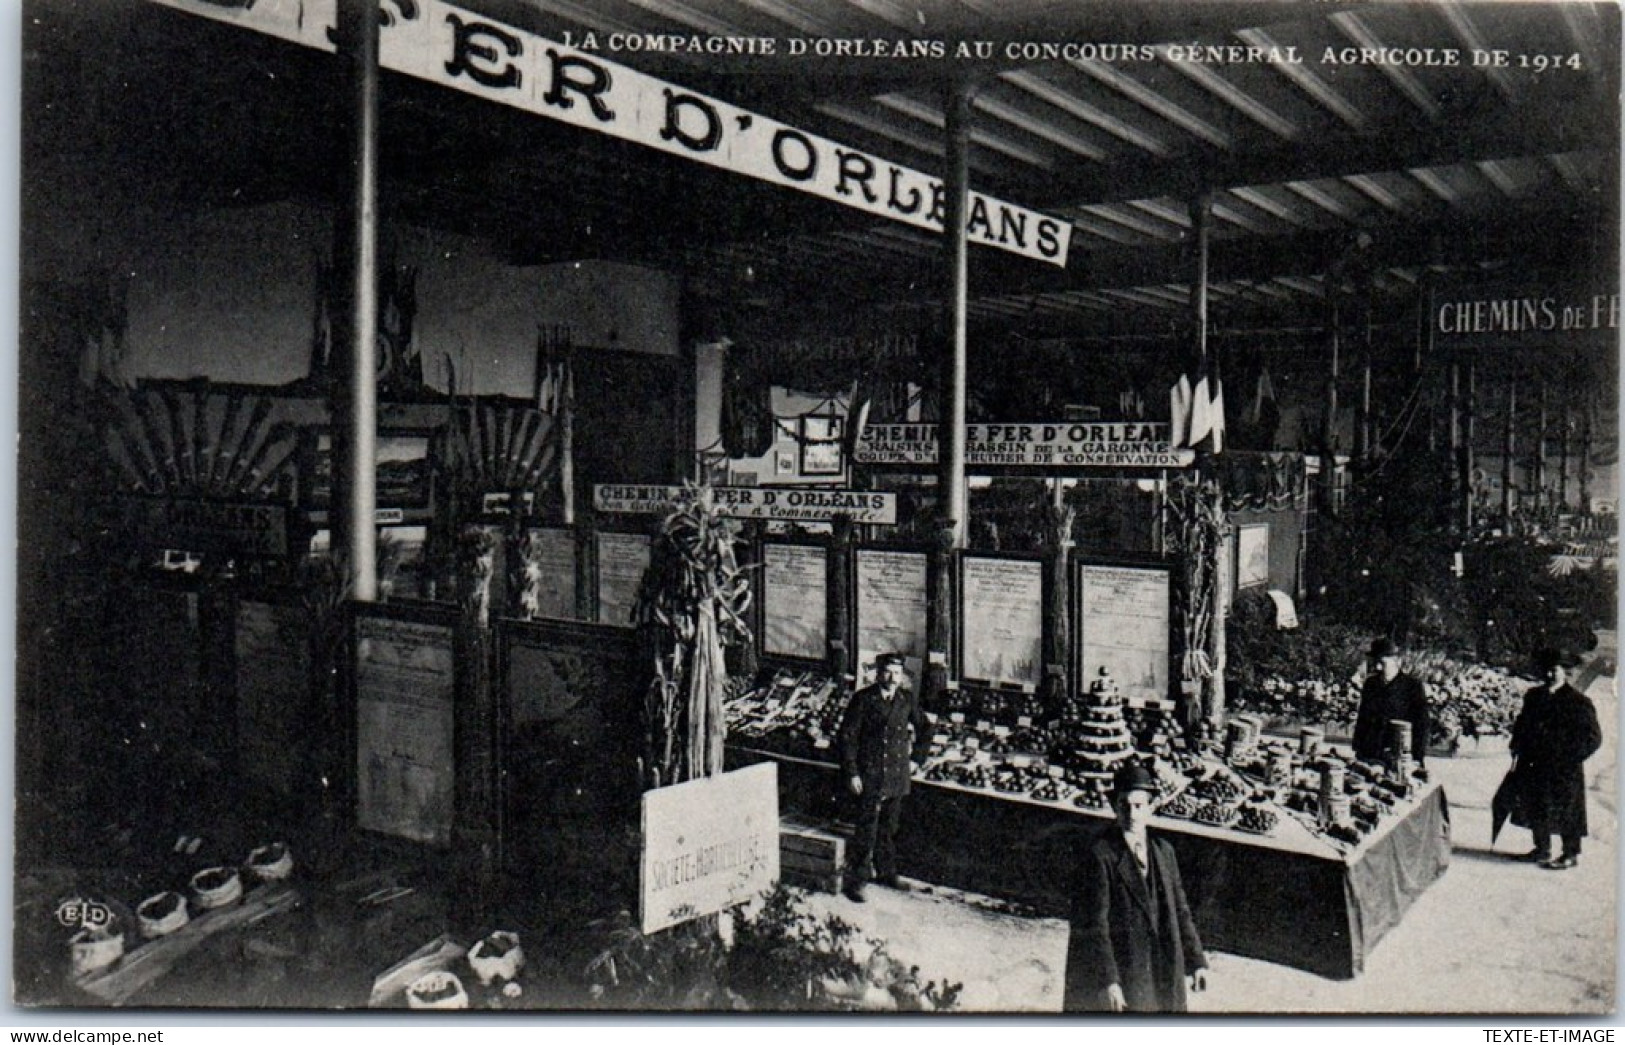 75 PARIS - Expo Agricole De 1914, Cie D'orleans Les Stands  - Ausstellungen